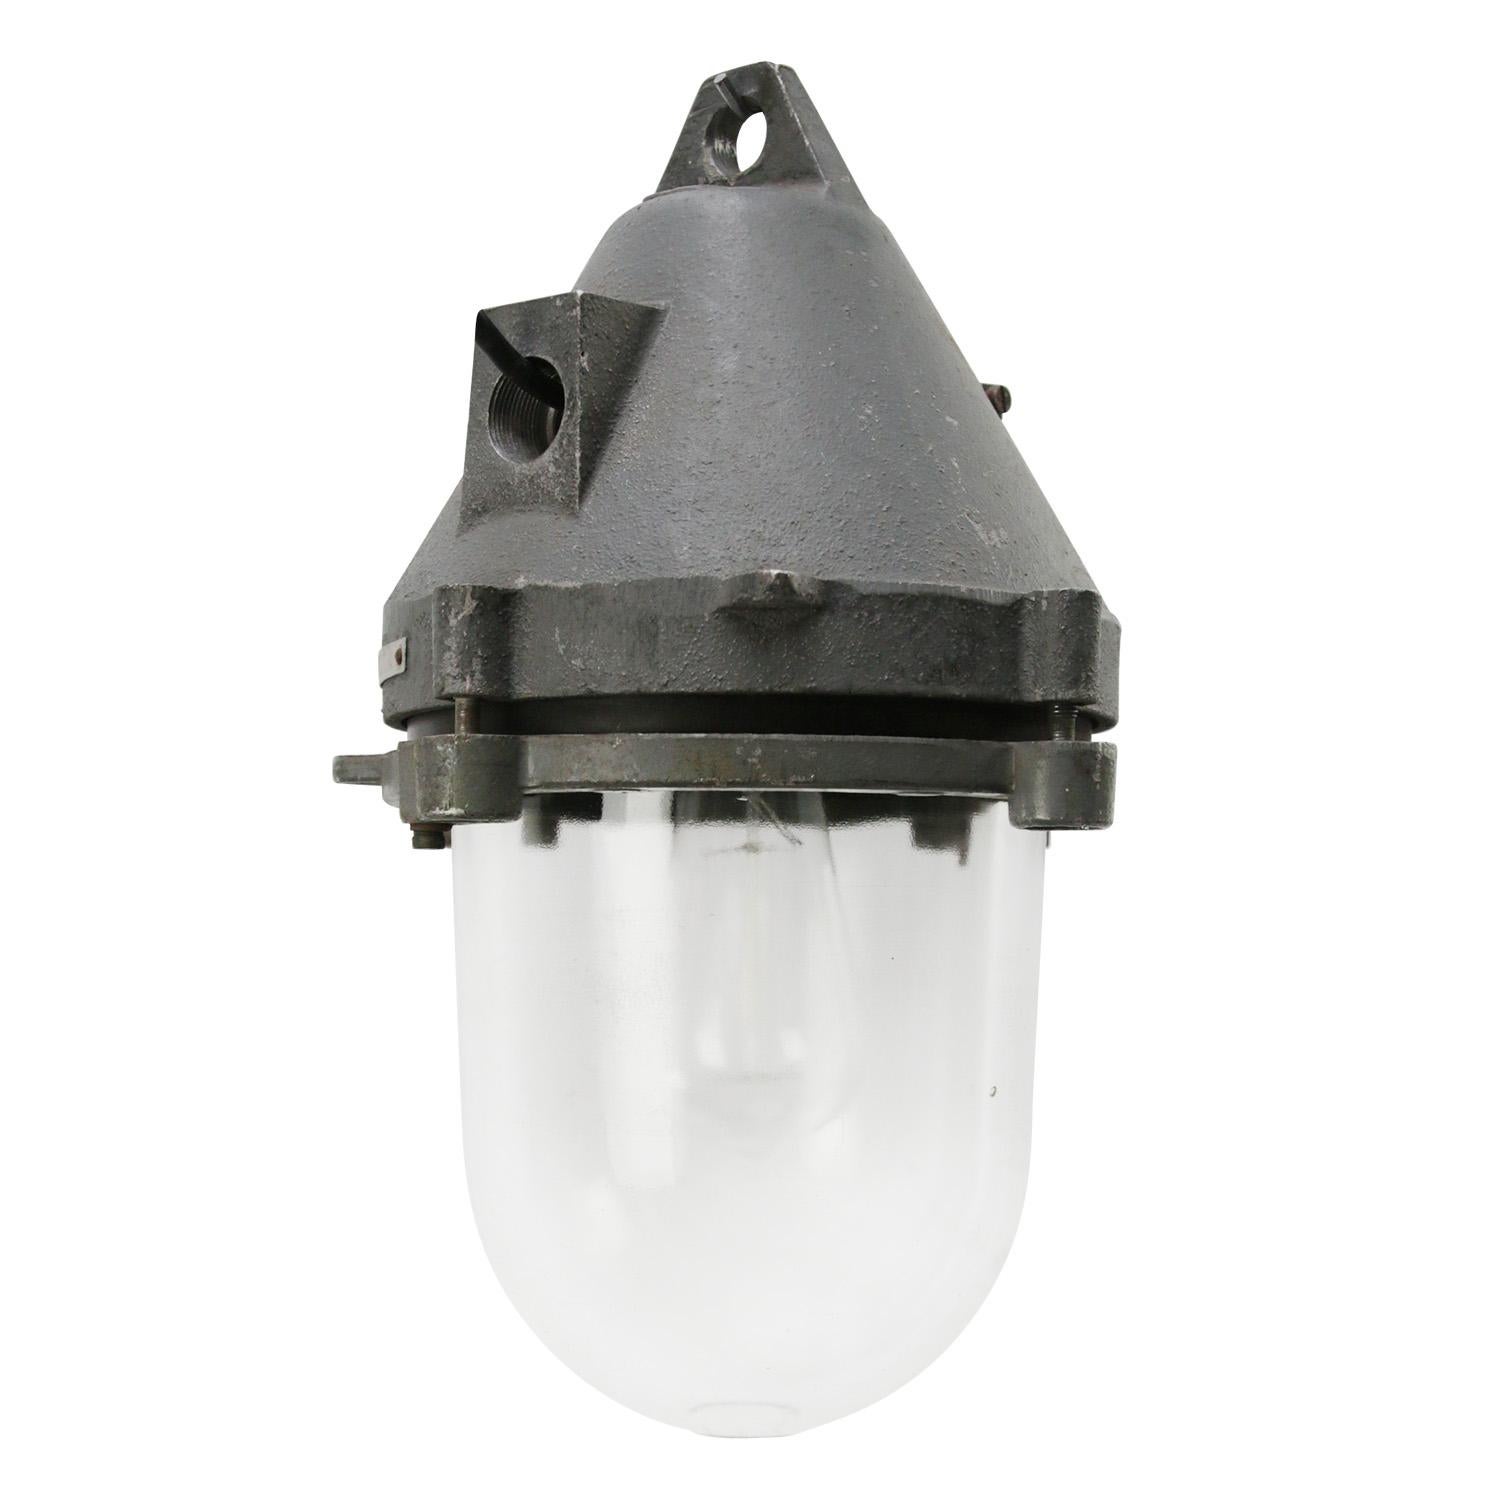 Industrielle Hängelampe.
Graues Aluminium-Klarglas.

Gewicht: 5.00 kg / 11 lb

Der Preis gilt für jeden einzelnen Artikel. Alle Lampen sind nach internationalen Standards für Glühbirnen, energieeffiziente und LED-Lampen geeignet.